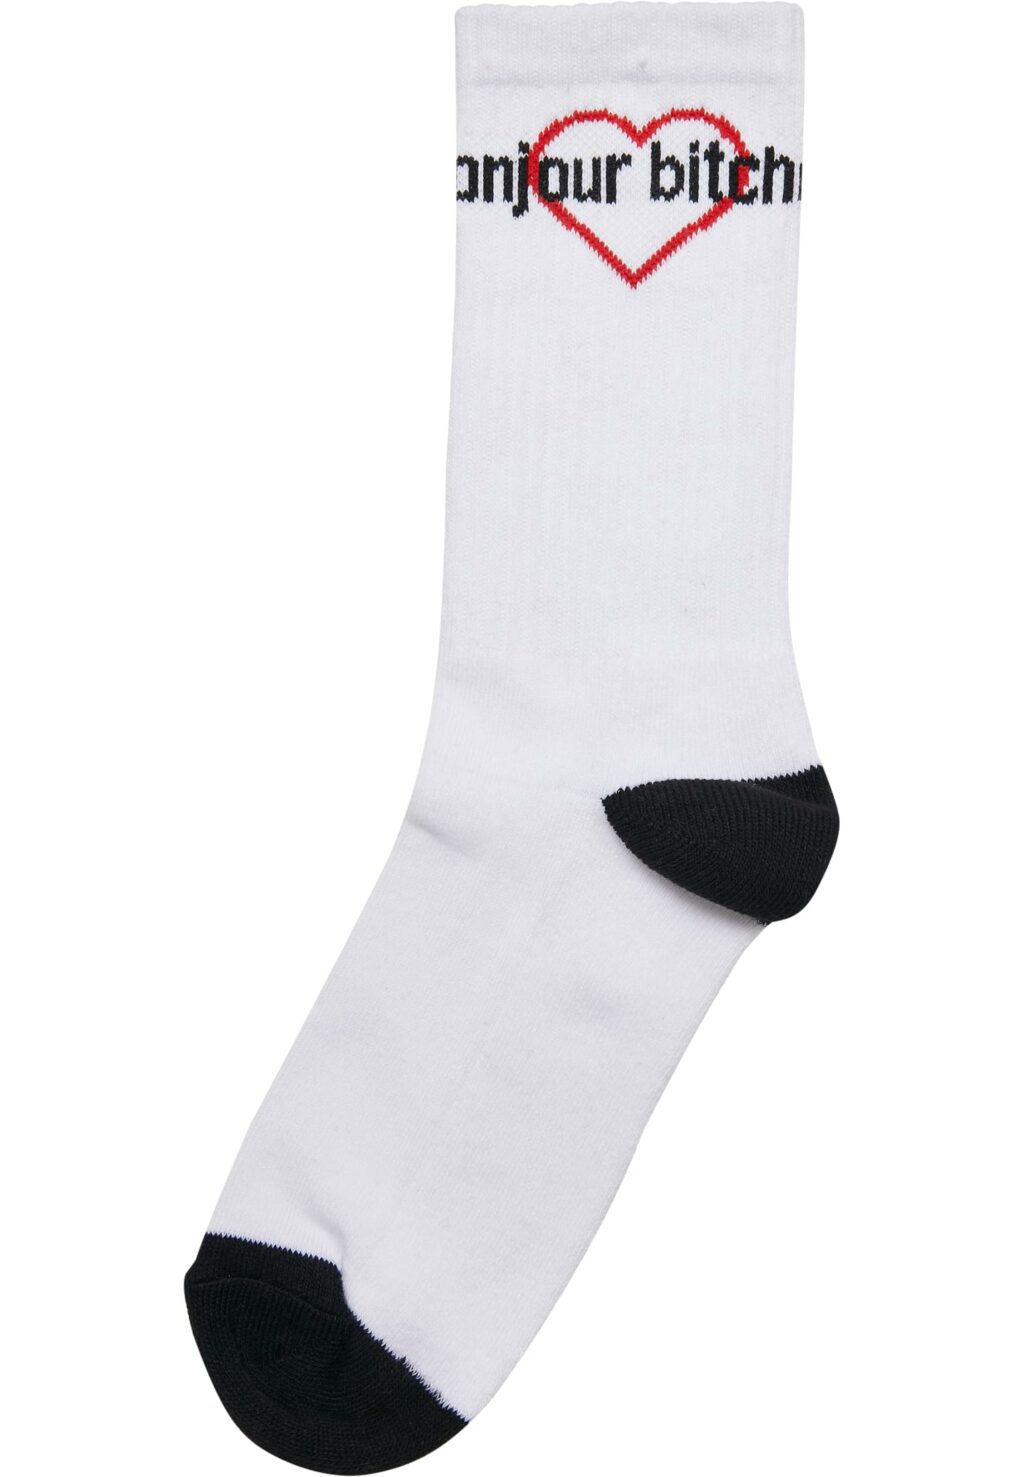 Bonjour Bitches Socks 3-Pack black/white/red MT2317